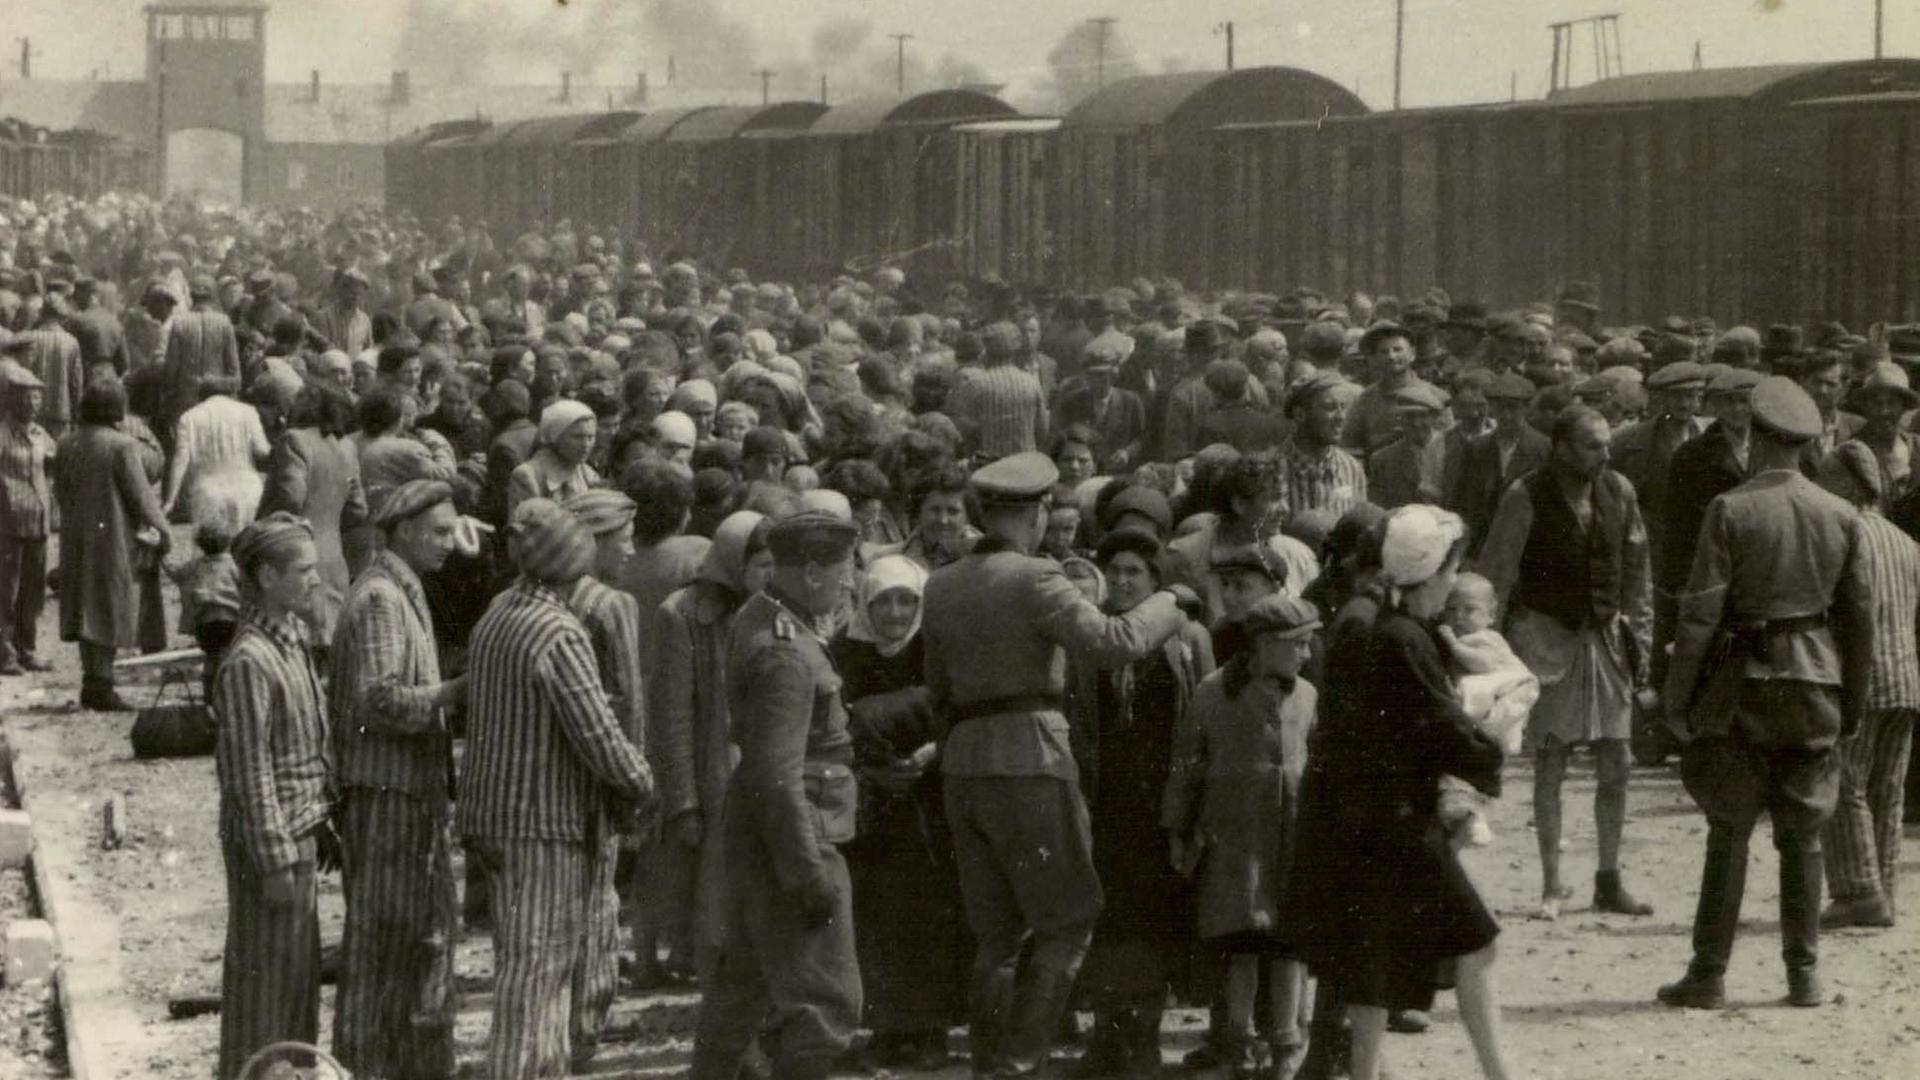 Ein Tag in Auschwitz